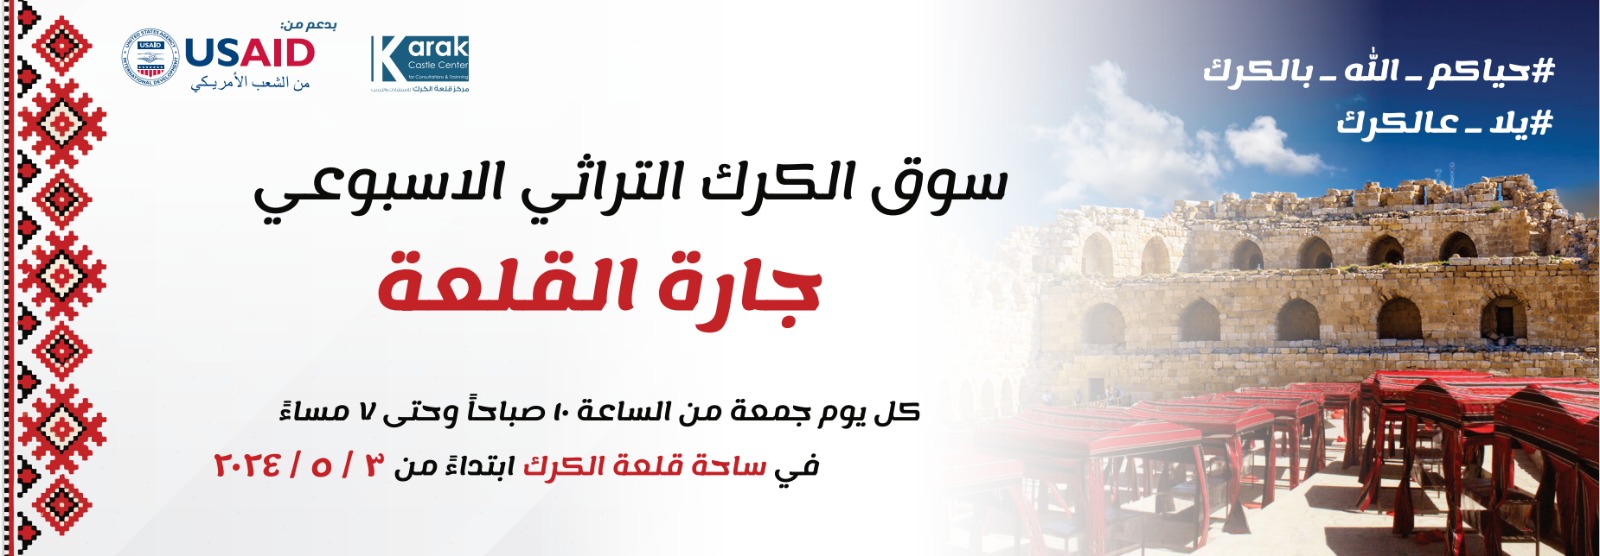 *افتتاح سوق الكرك التراثي الأسبوعي (جارة القلعة)الجمعة القادمة / مصور